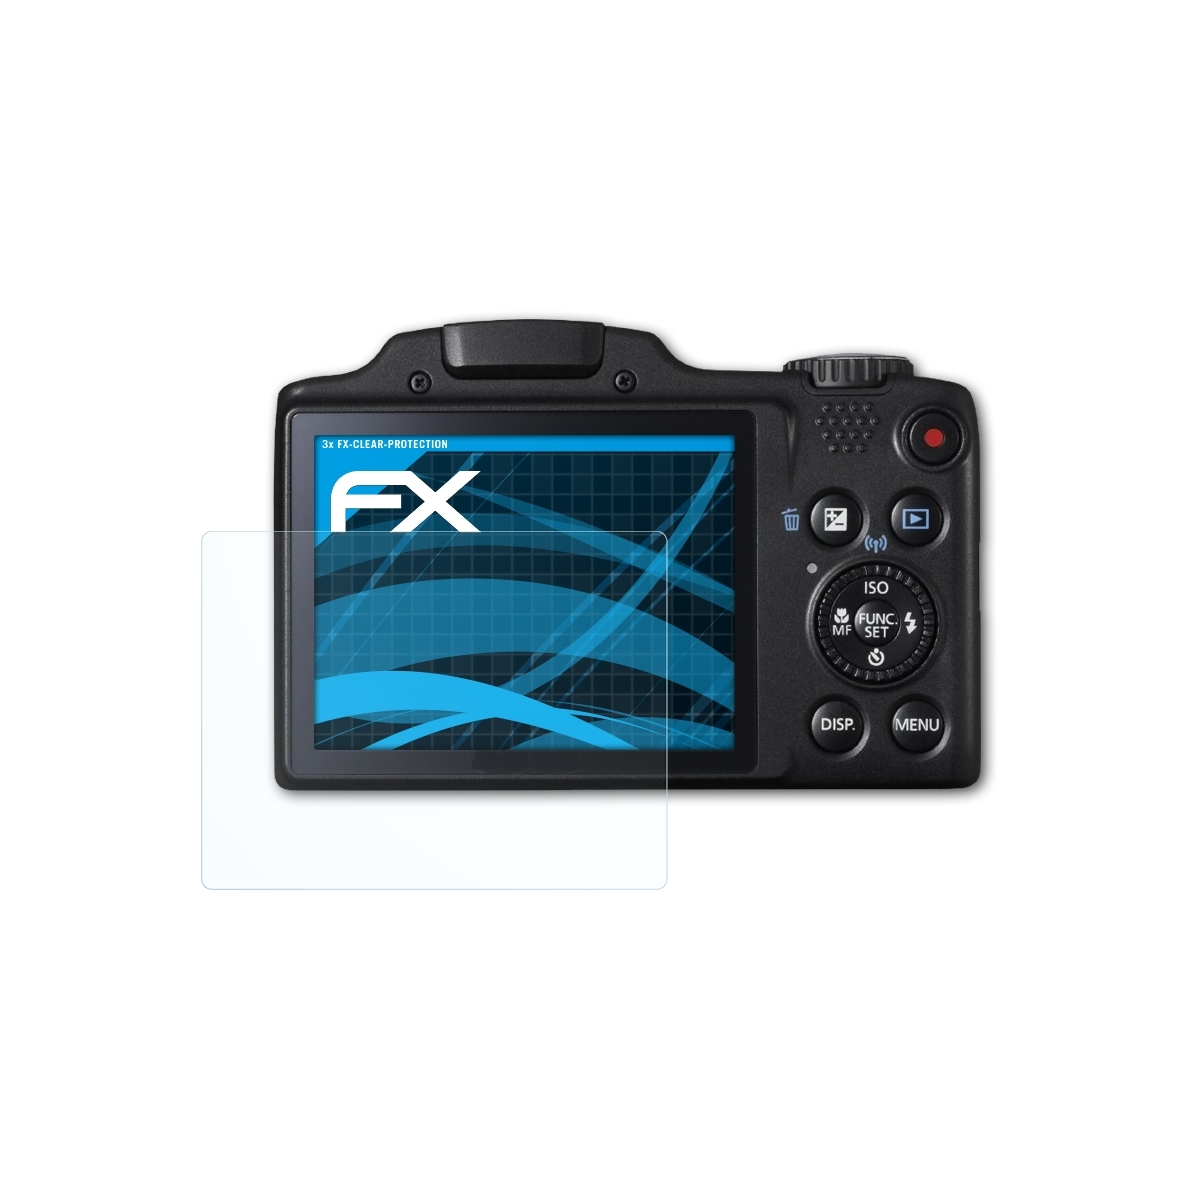 SX510 ATFOLIX HS) 3x Displayschutz(für PowerShot Canon FX-Clear